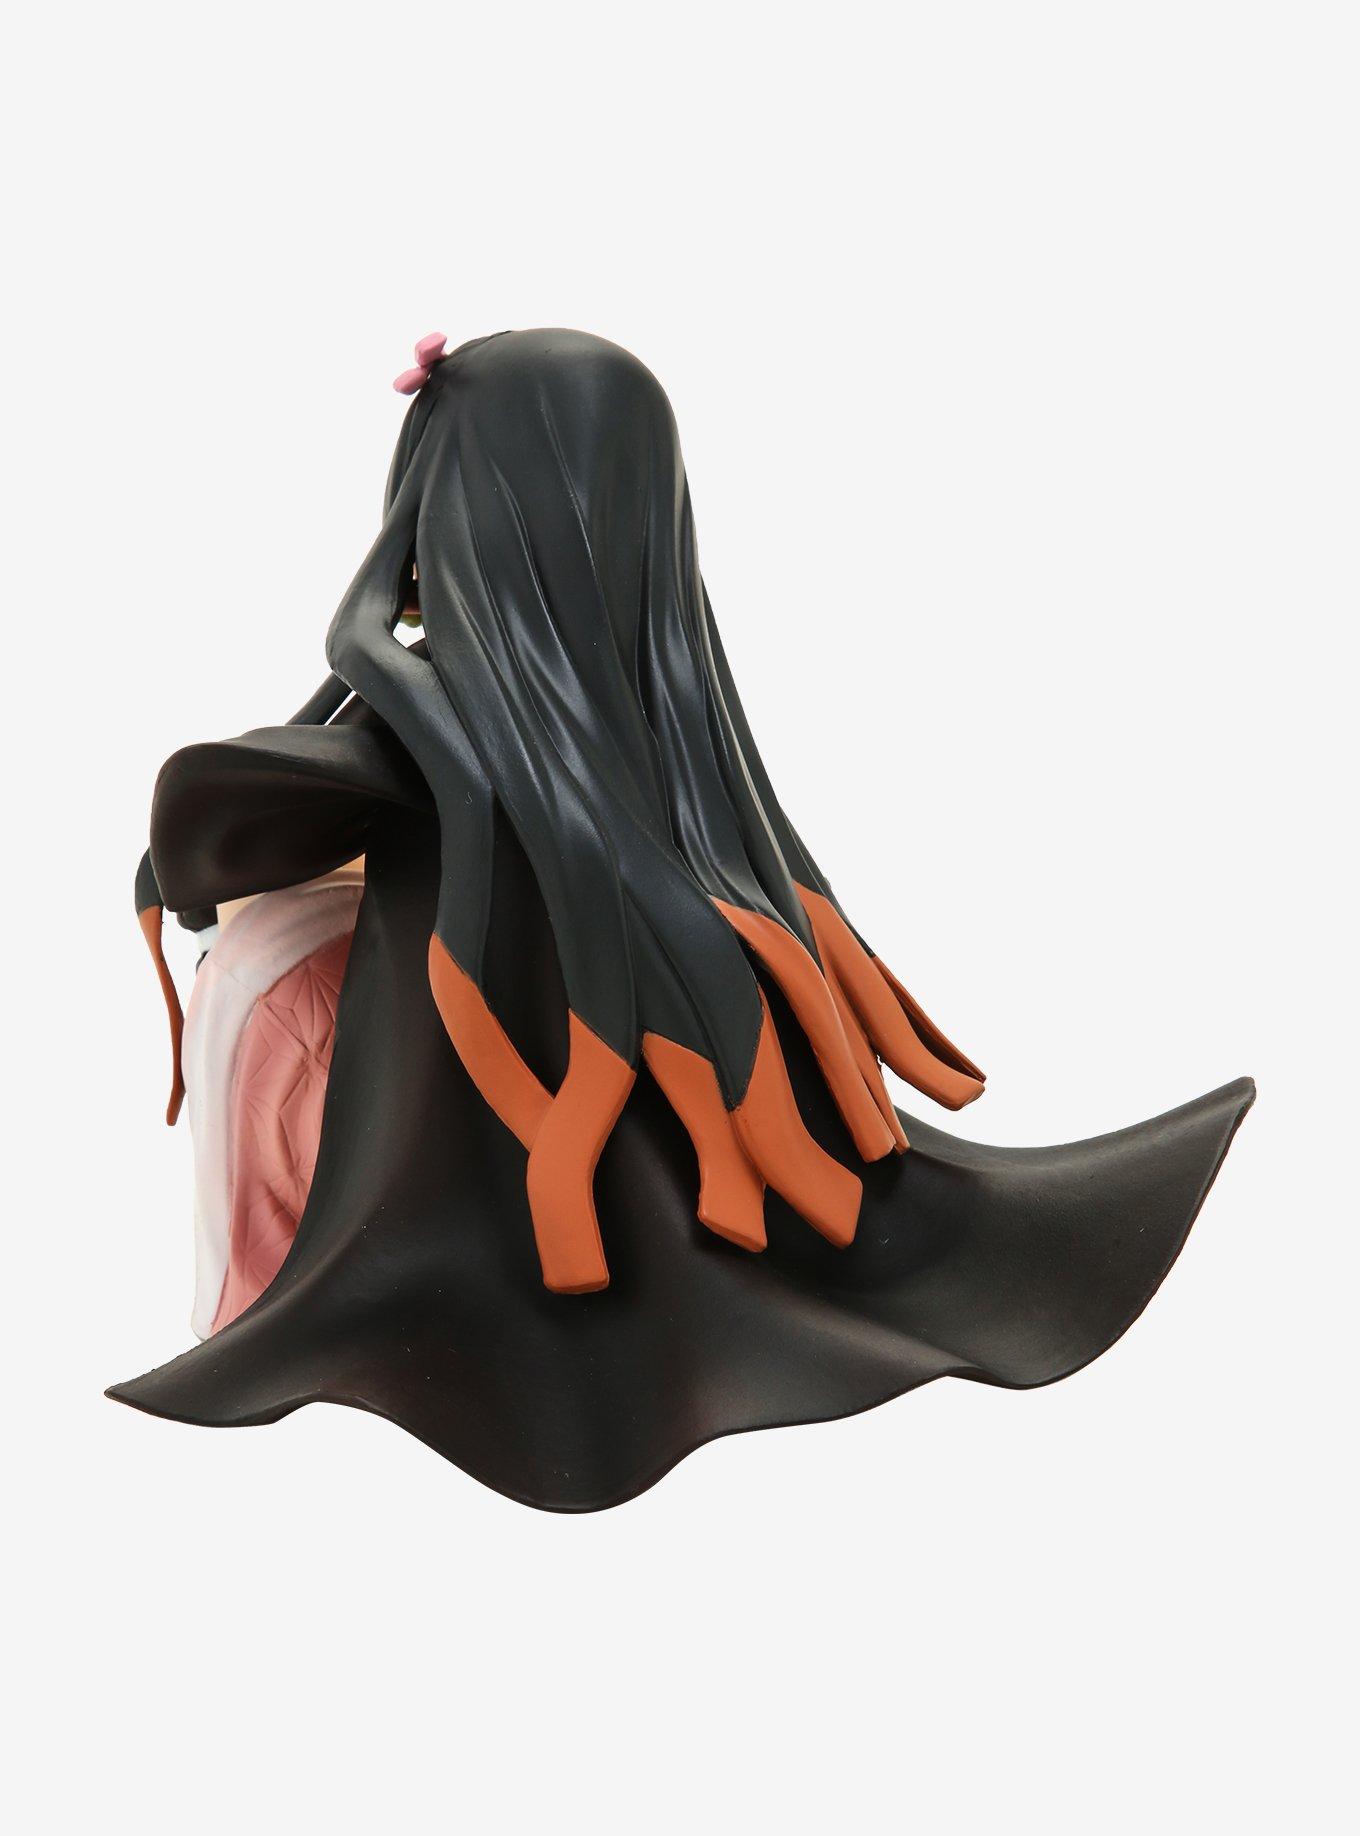 Bandai Spirits Demon Slayer: Kimetsu No Yaiba Ichiban Kuji Nezuko Kamado Collectible Figure, , alternate